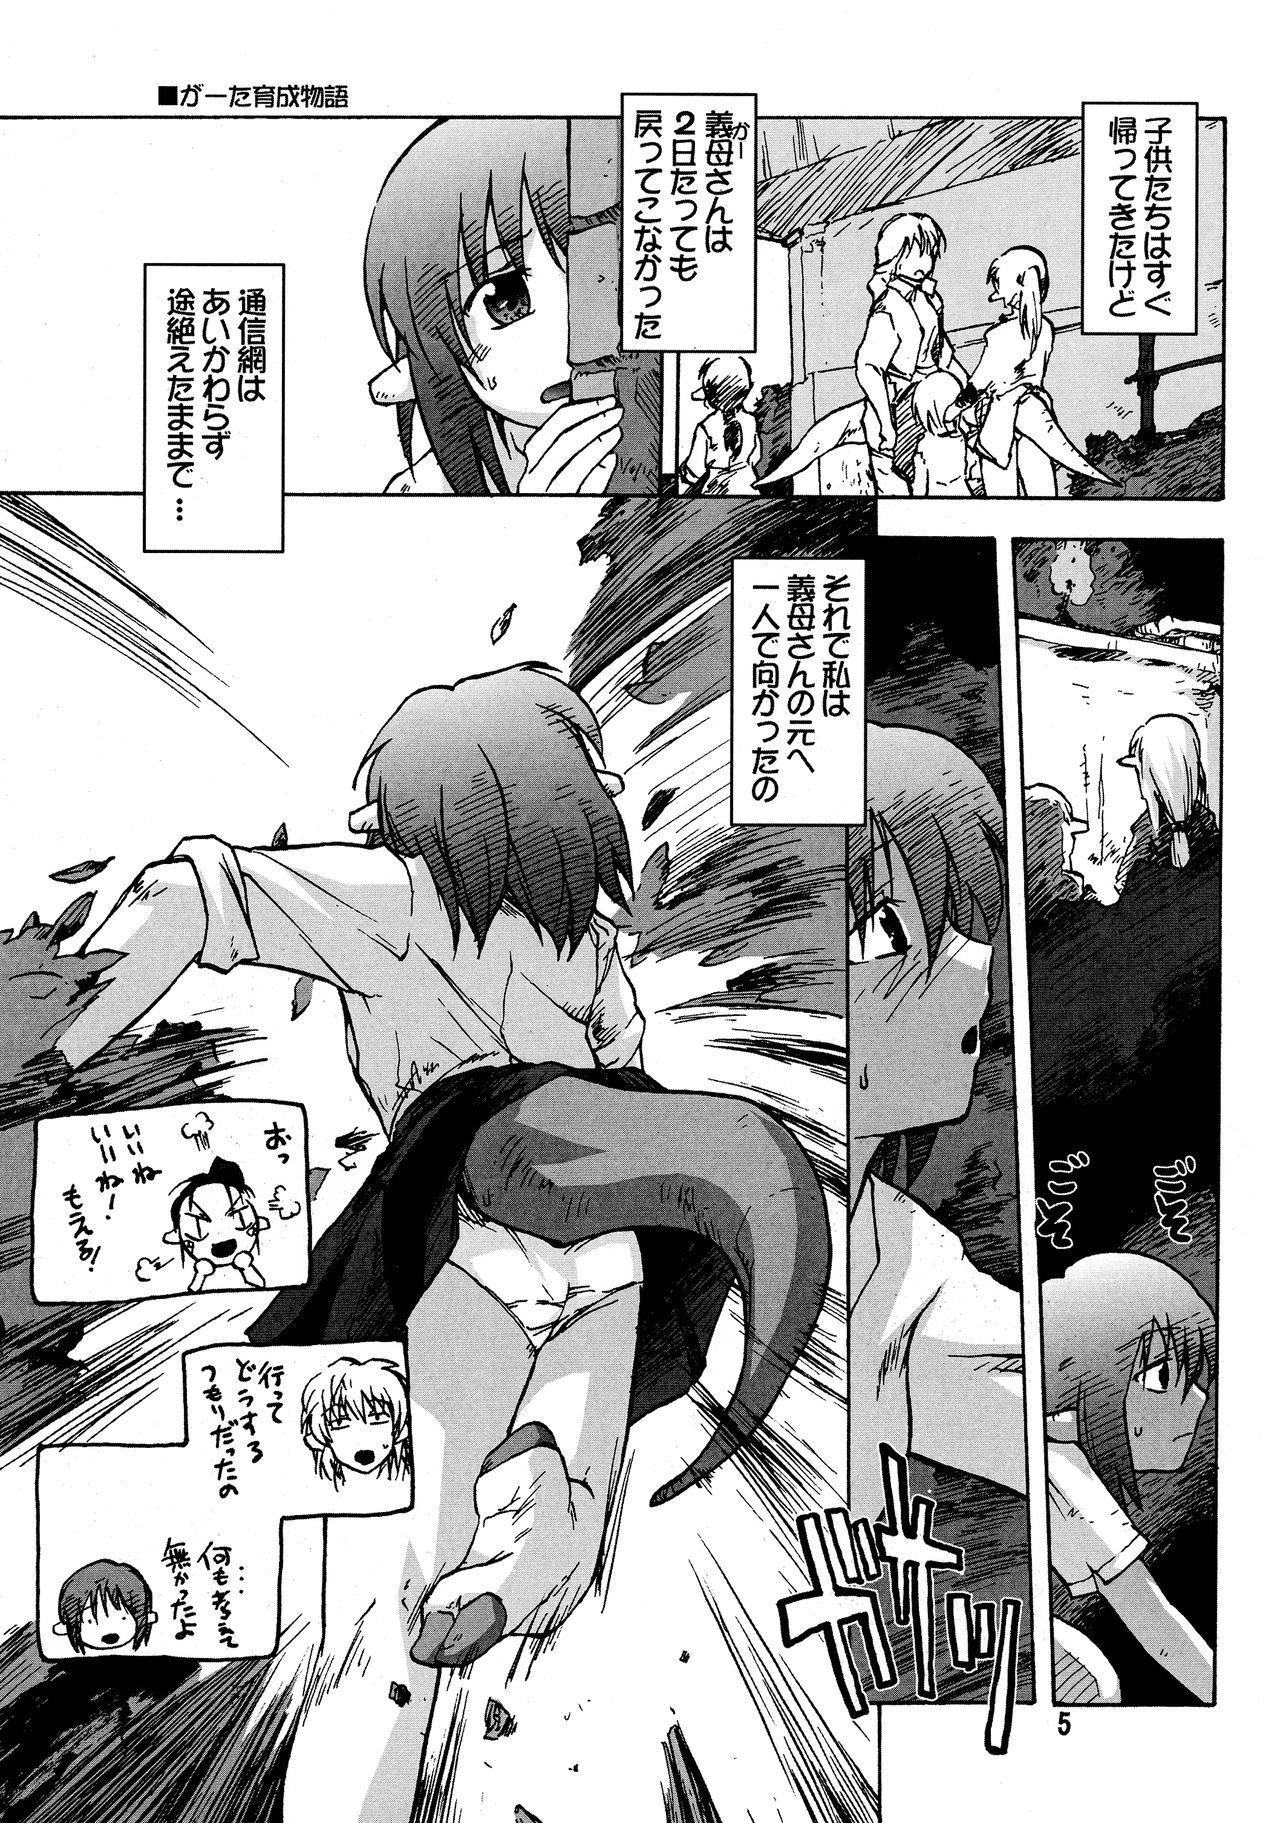 Skype Manga Mintochikuwa vol. 3 Kiss - Page 5